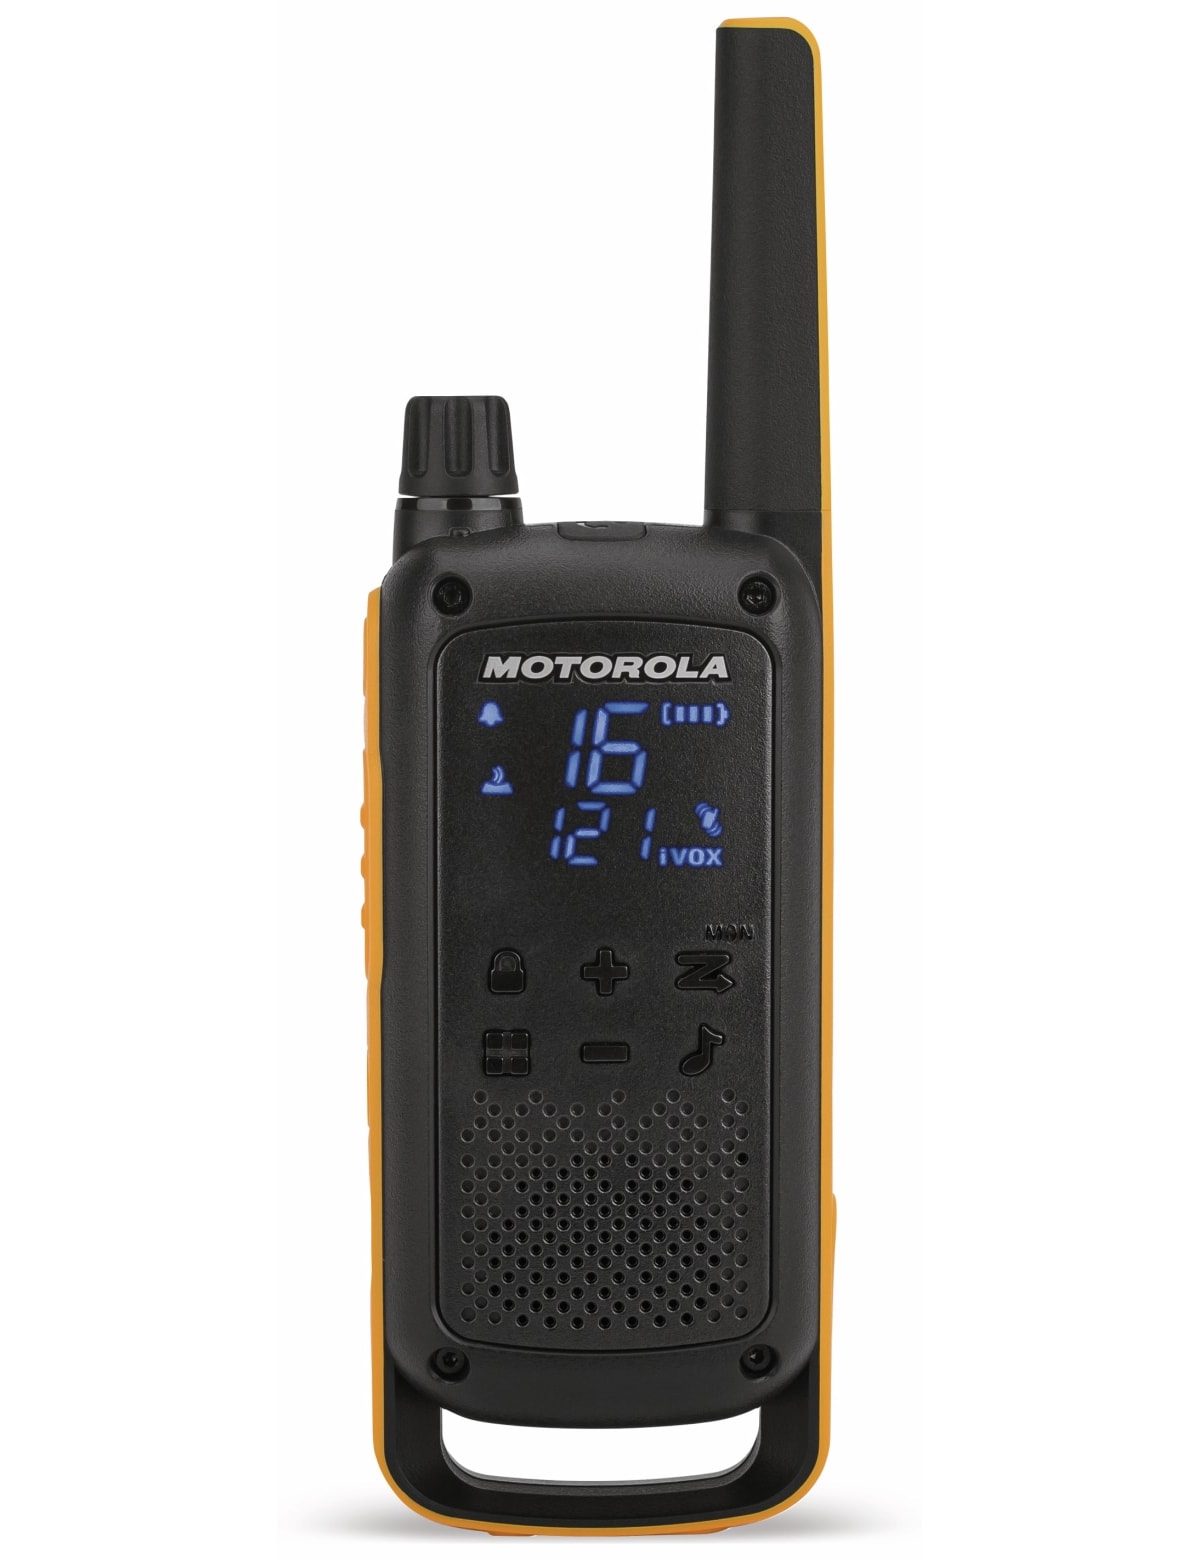 Motorola PMR-Funkgeräteset Talkabout T82 Extreme RSM, 2 Stück